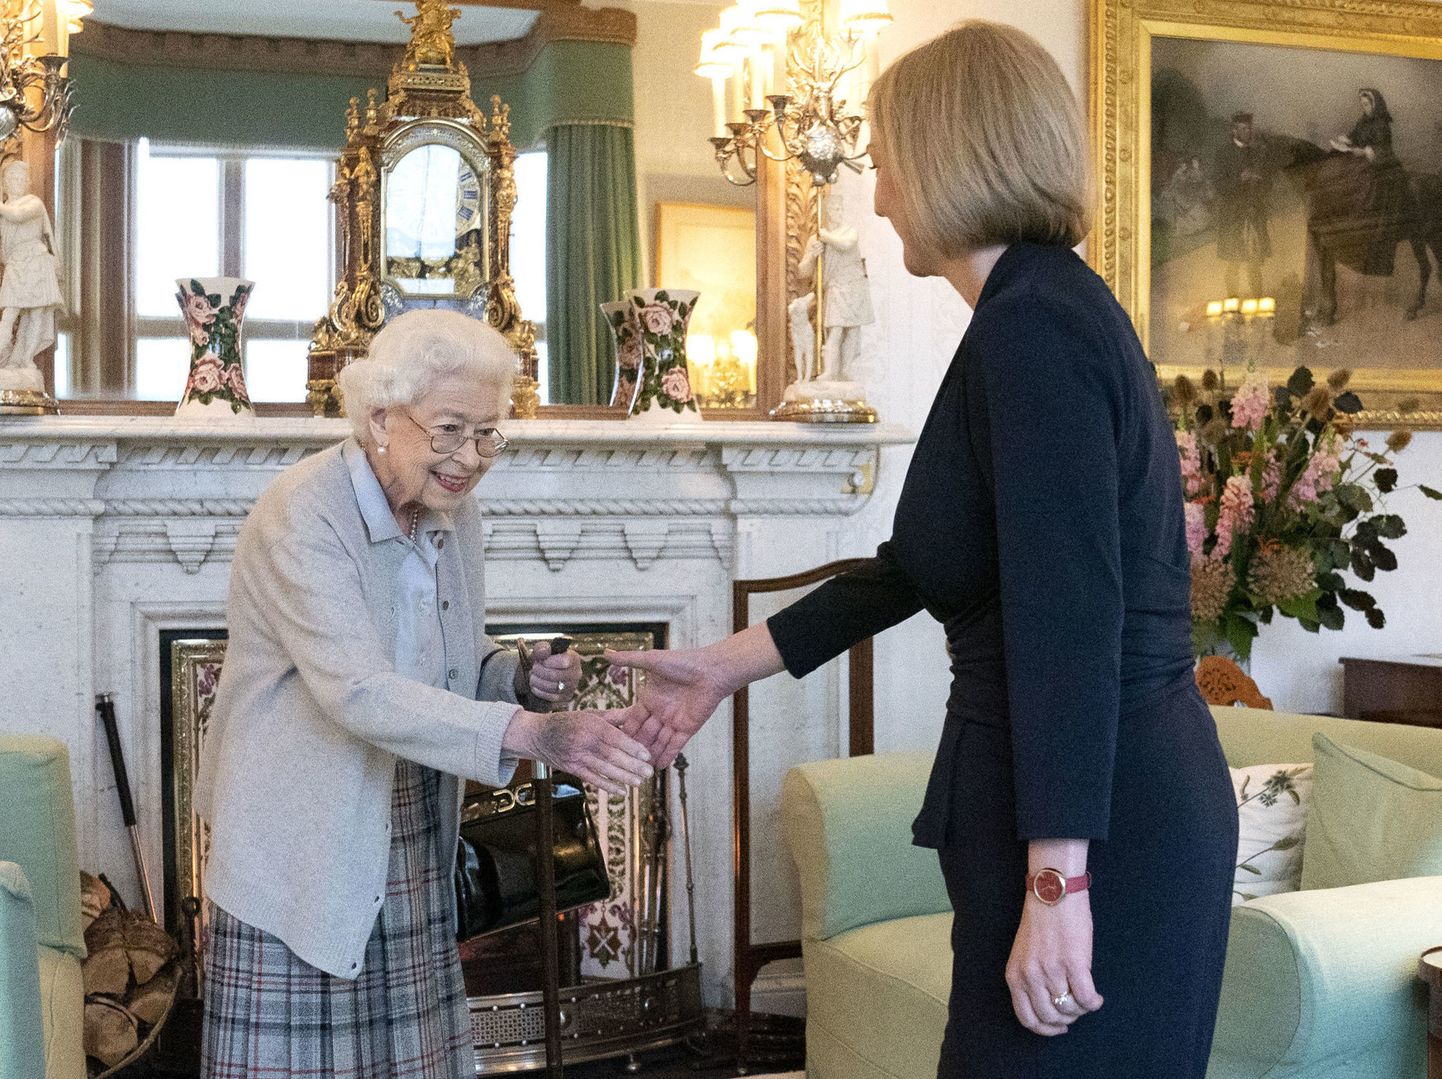 Kohtumine peaminister Liz Trussiga jäi kuninganna Elizabeth II-le viimaseks kokkusaamiseks valitsusjuhiga.